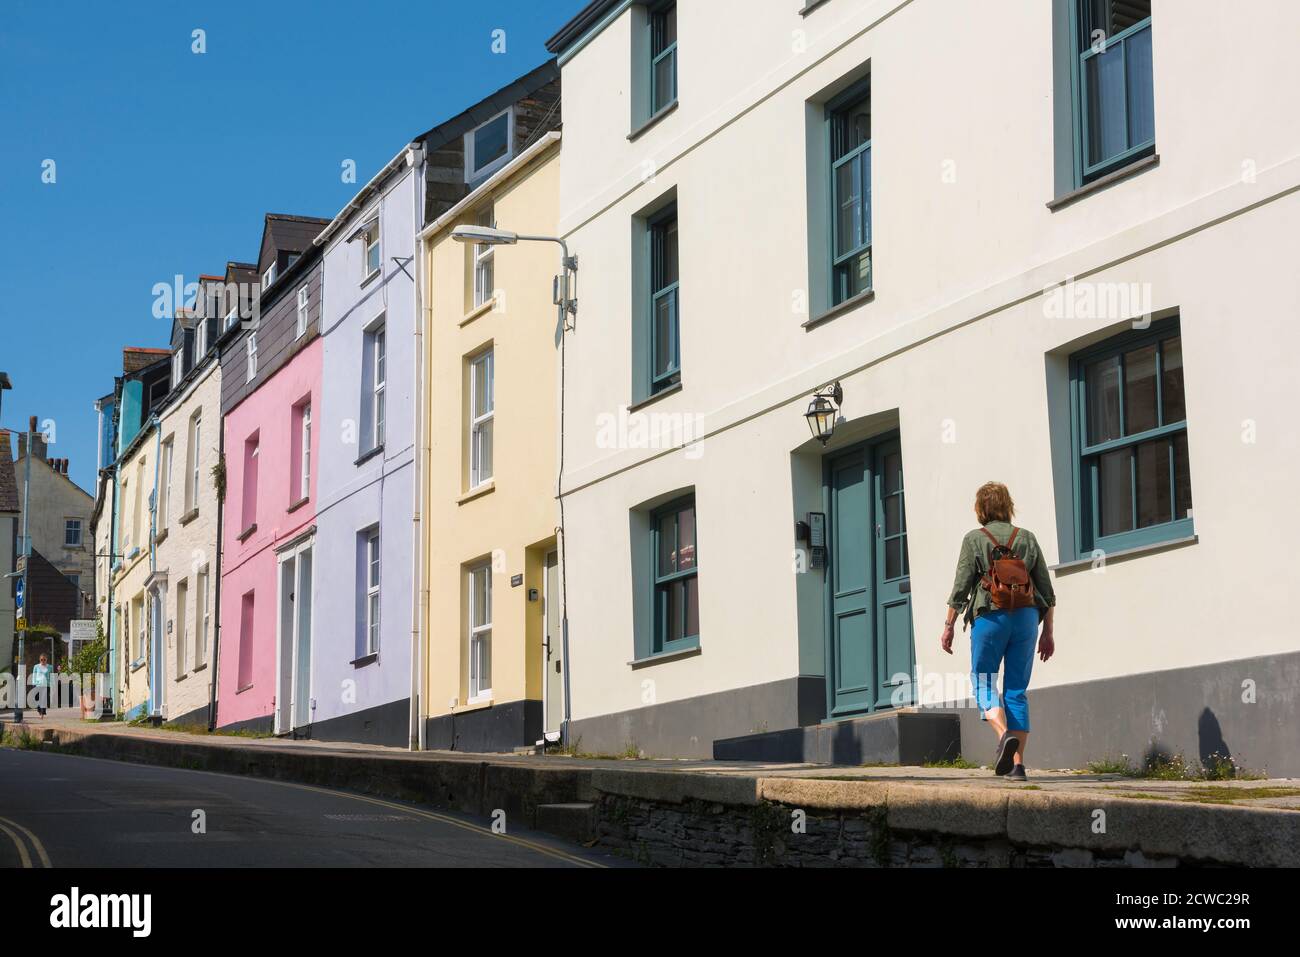 Concepto de vacaciones para mujer, vista trasera de una mujer soltera madura que lleva una mochila explorando una calle colorida en un barrio residencial, Reino Unido Foto de stock